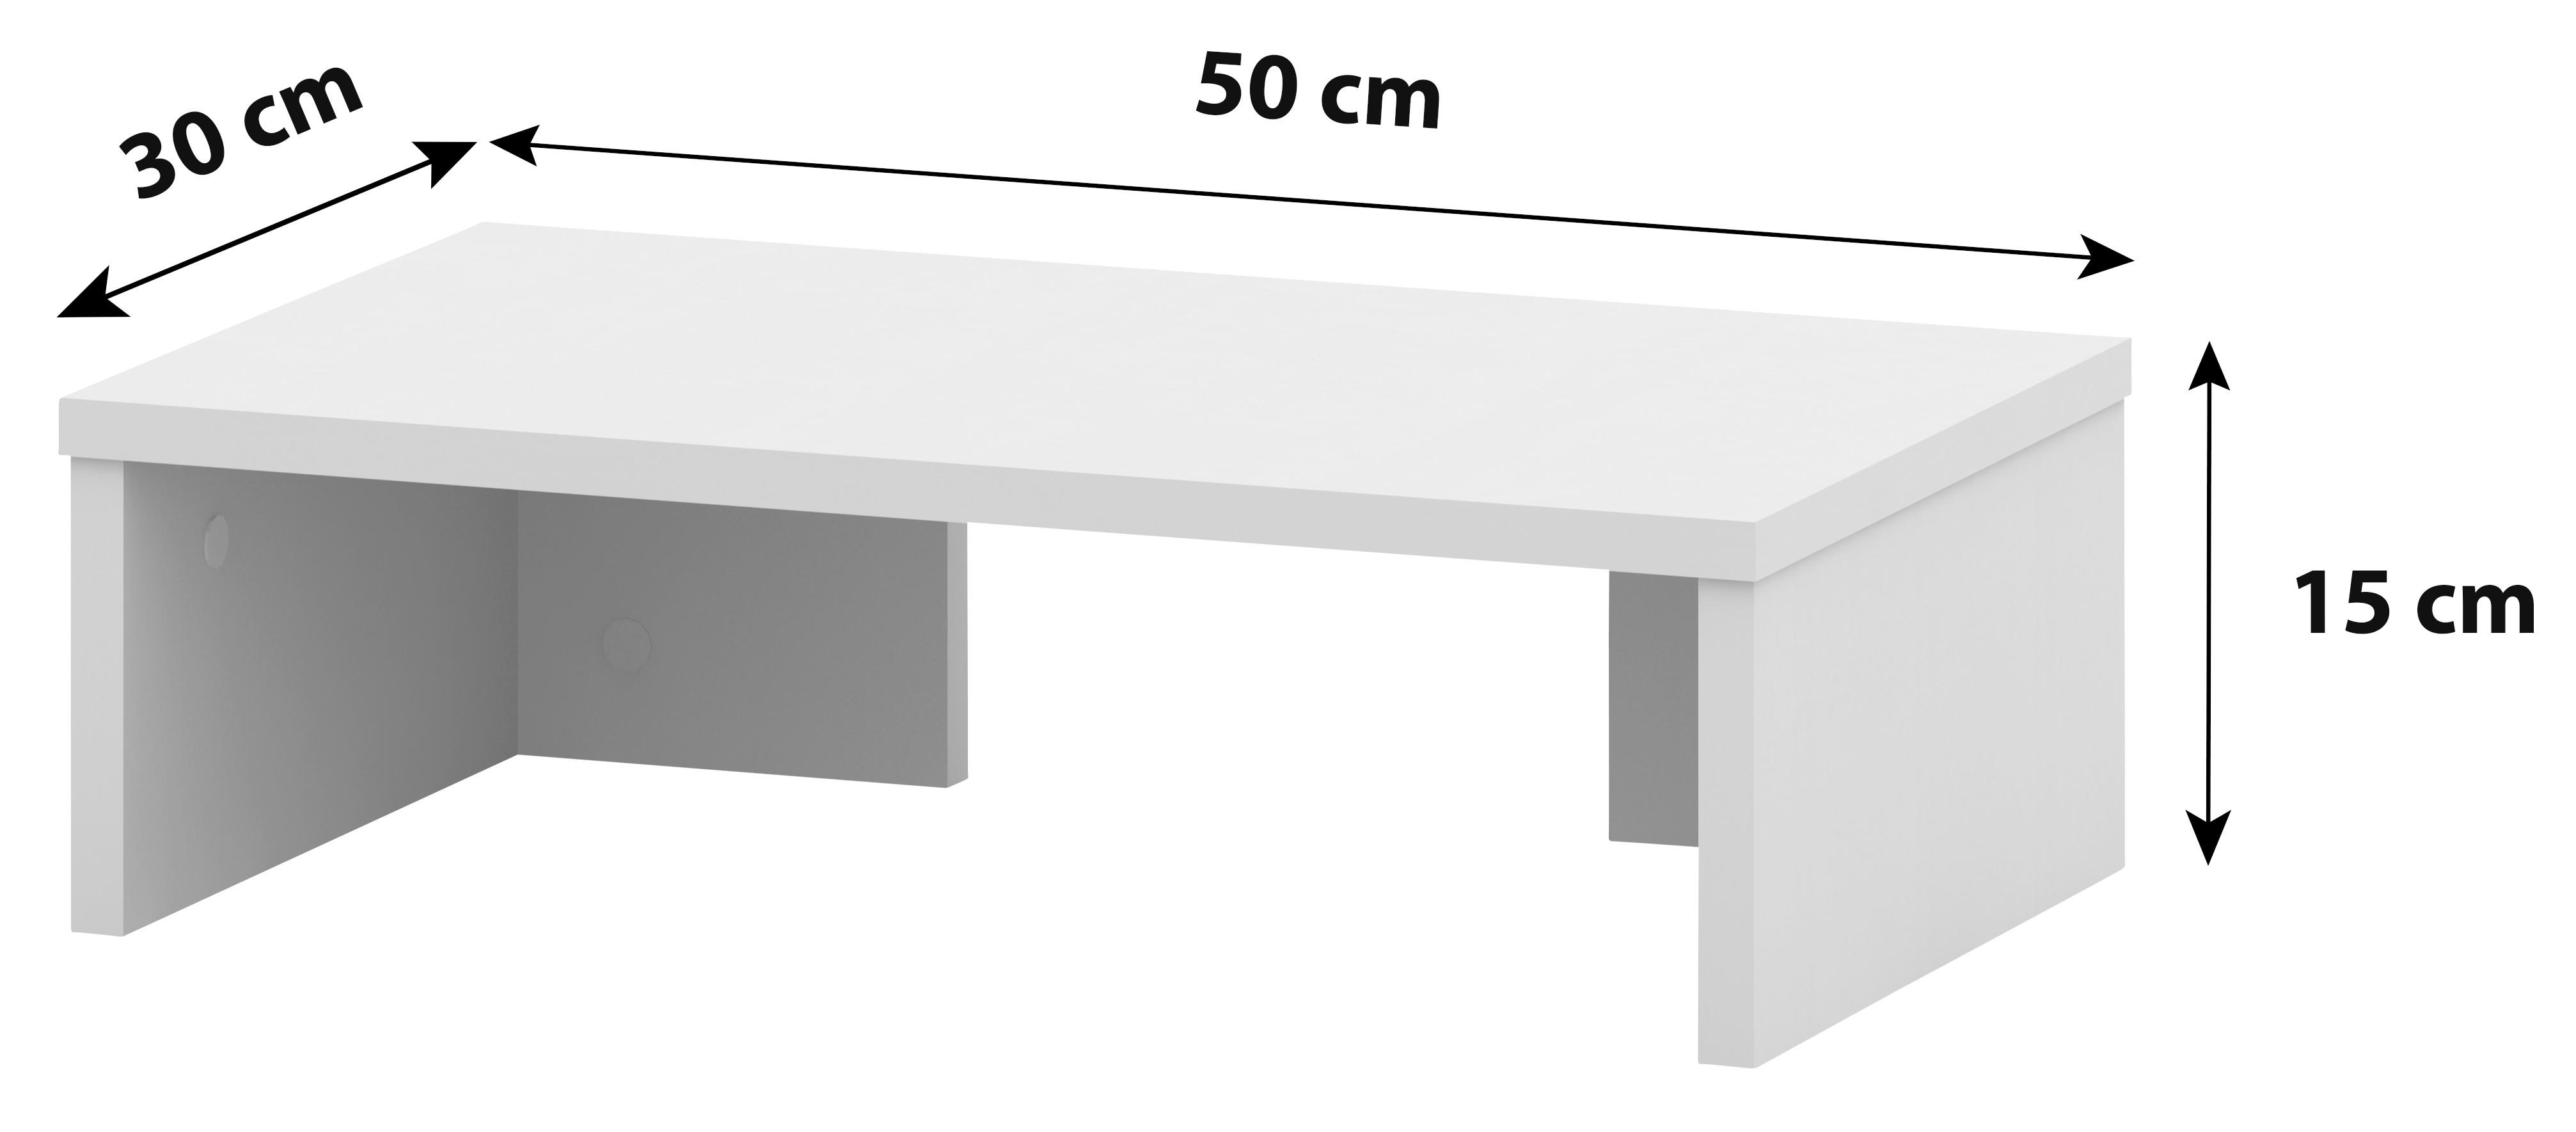 Schreibtischaufsatz B 50cm H 14,5cm Moni, Silber - Alufarben, MODERN, Holzwerkstoff (50/14,5/30cm)